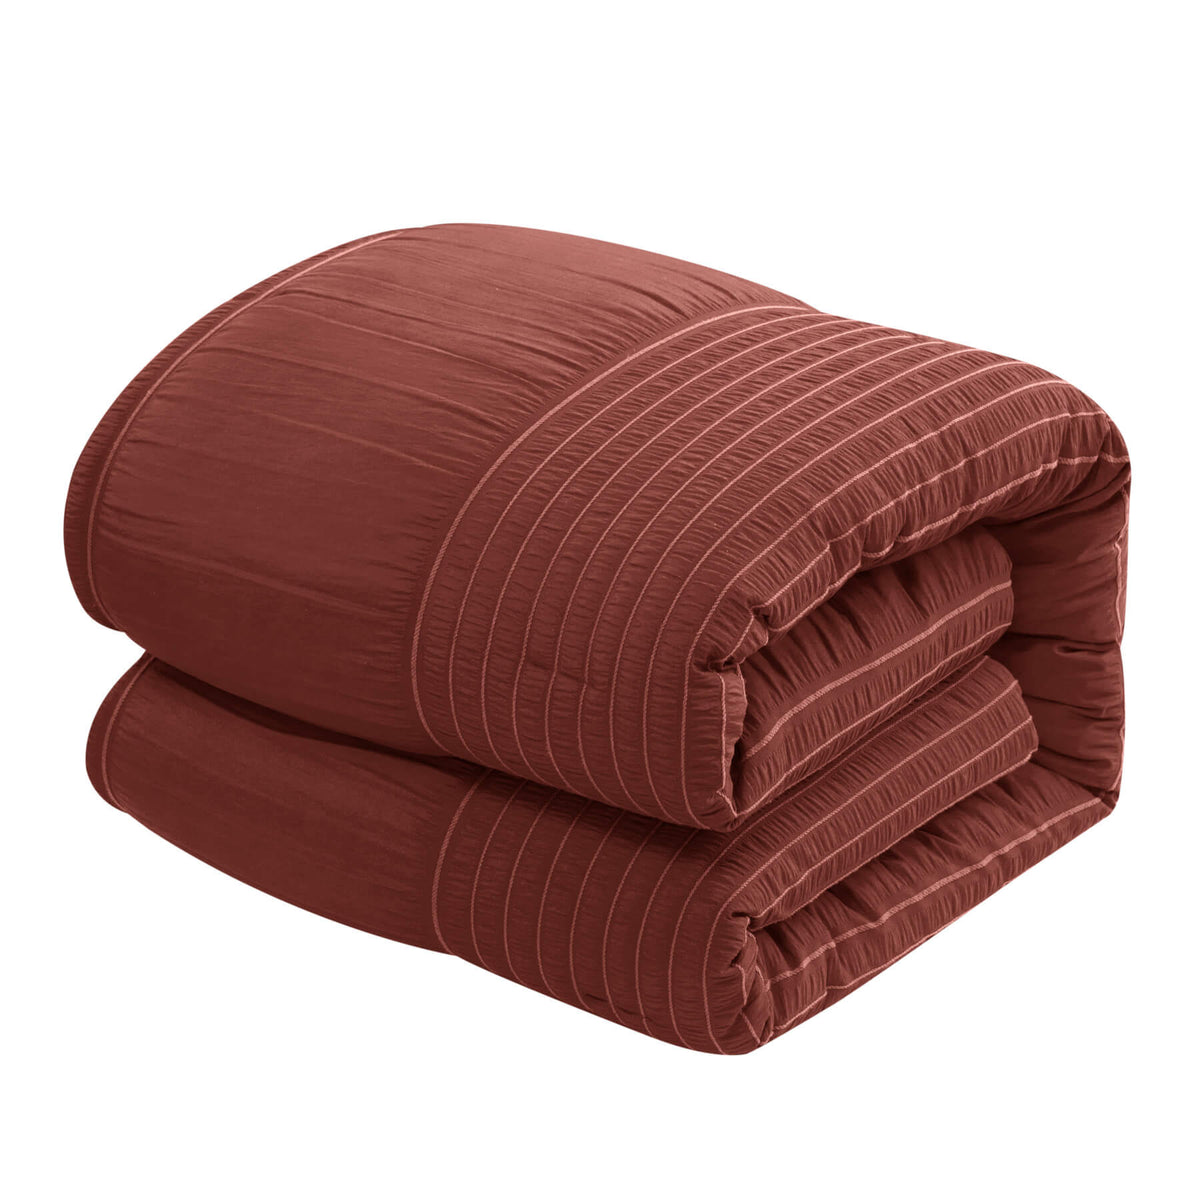 Chic Home Leona 9 Piece Pleated Seersucker Comforter Set-